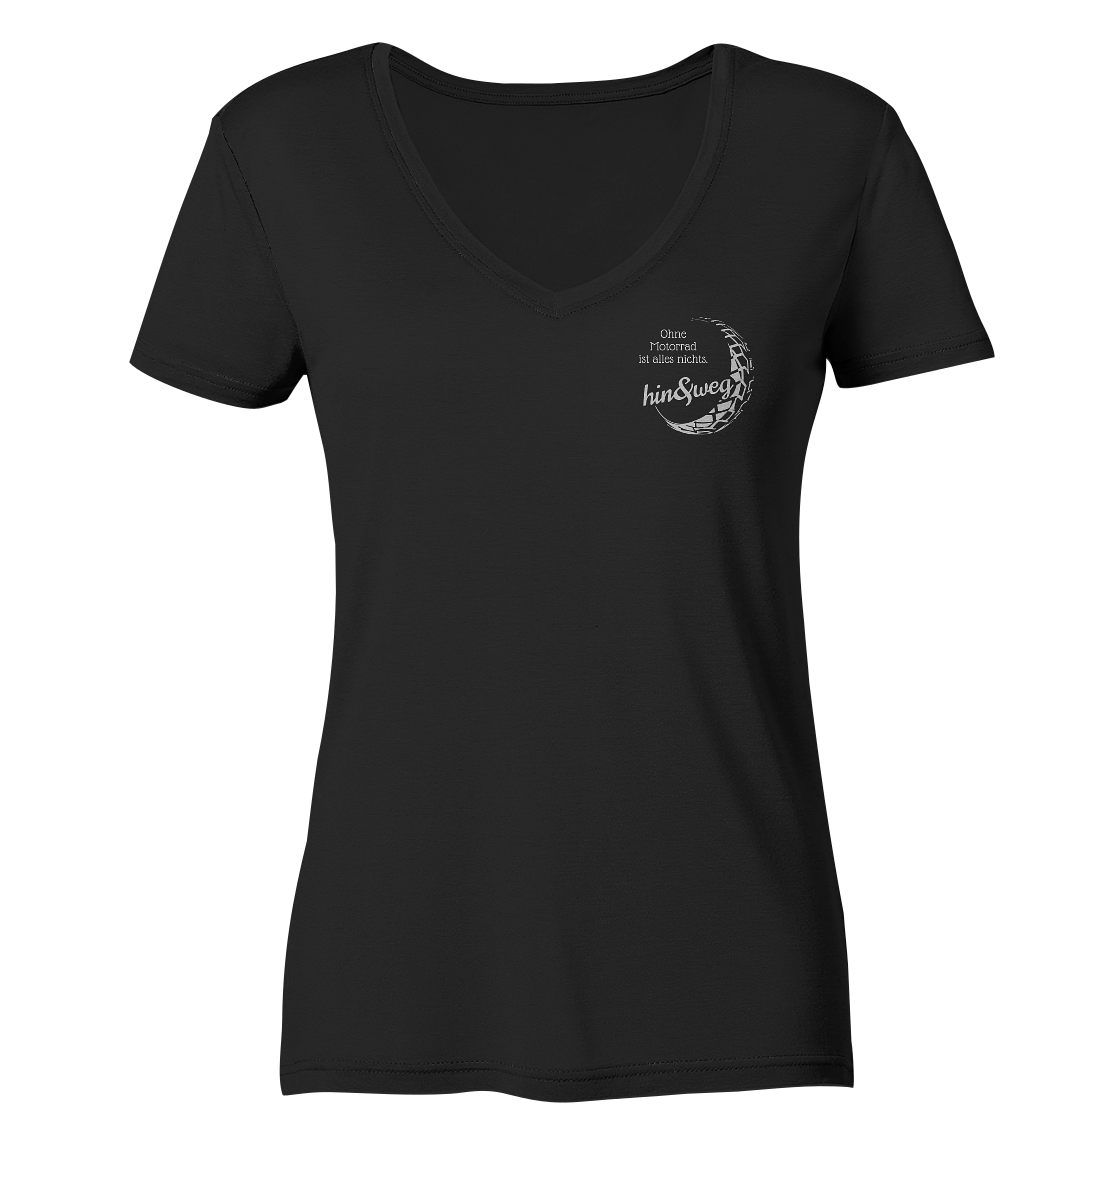 Damen-T-Shirt, V-Ausschnitt, mit kleinem Logo "Eva hin und weg" und Spruch "Ohne Motorrad ist alles nichts.", schwarz